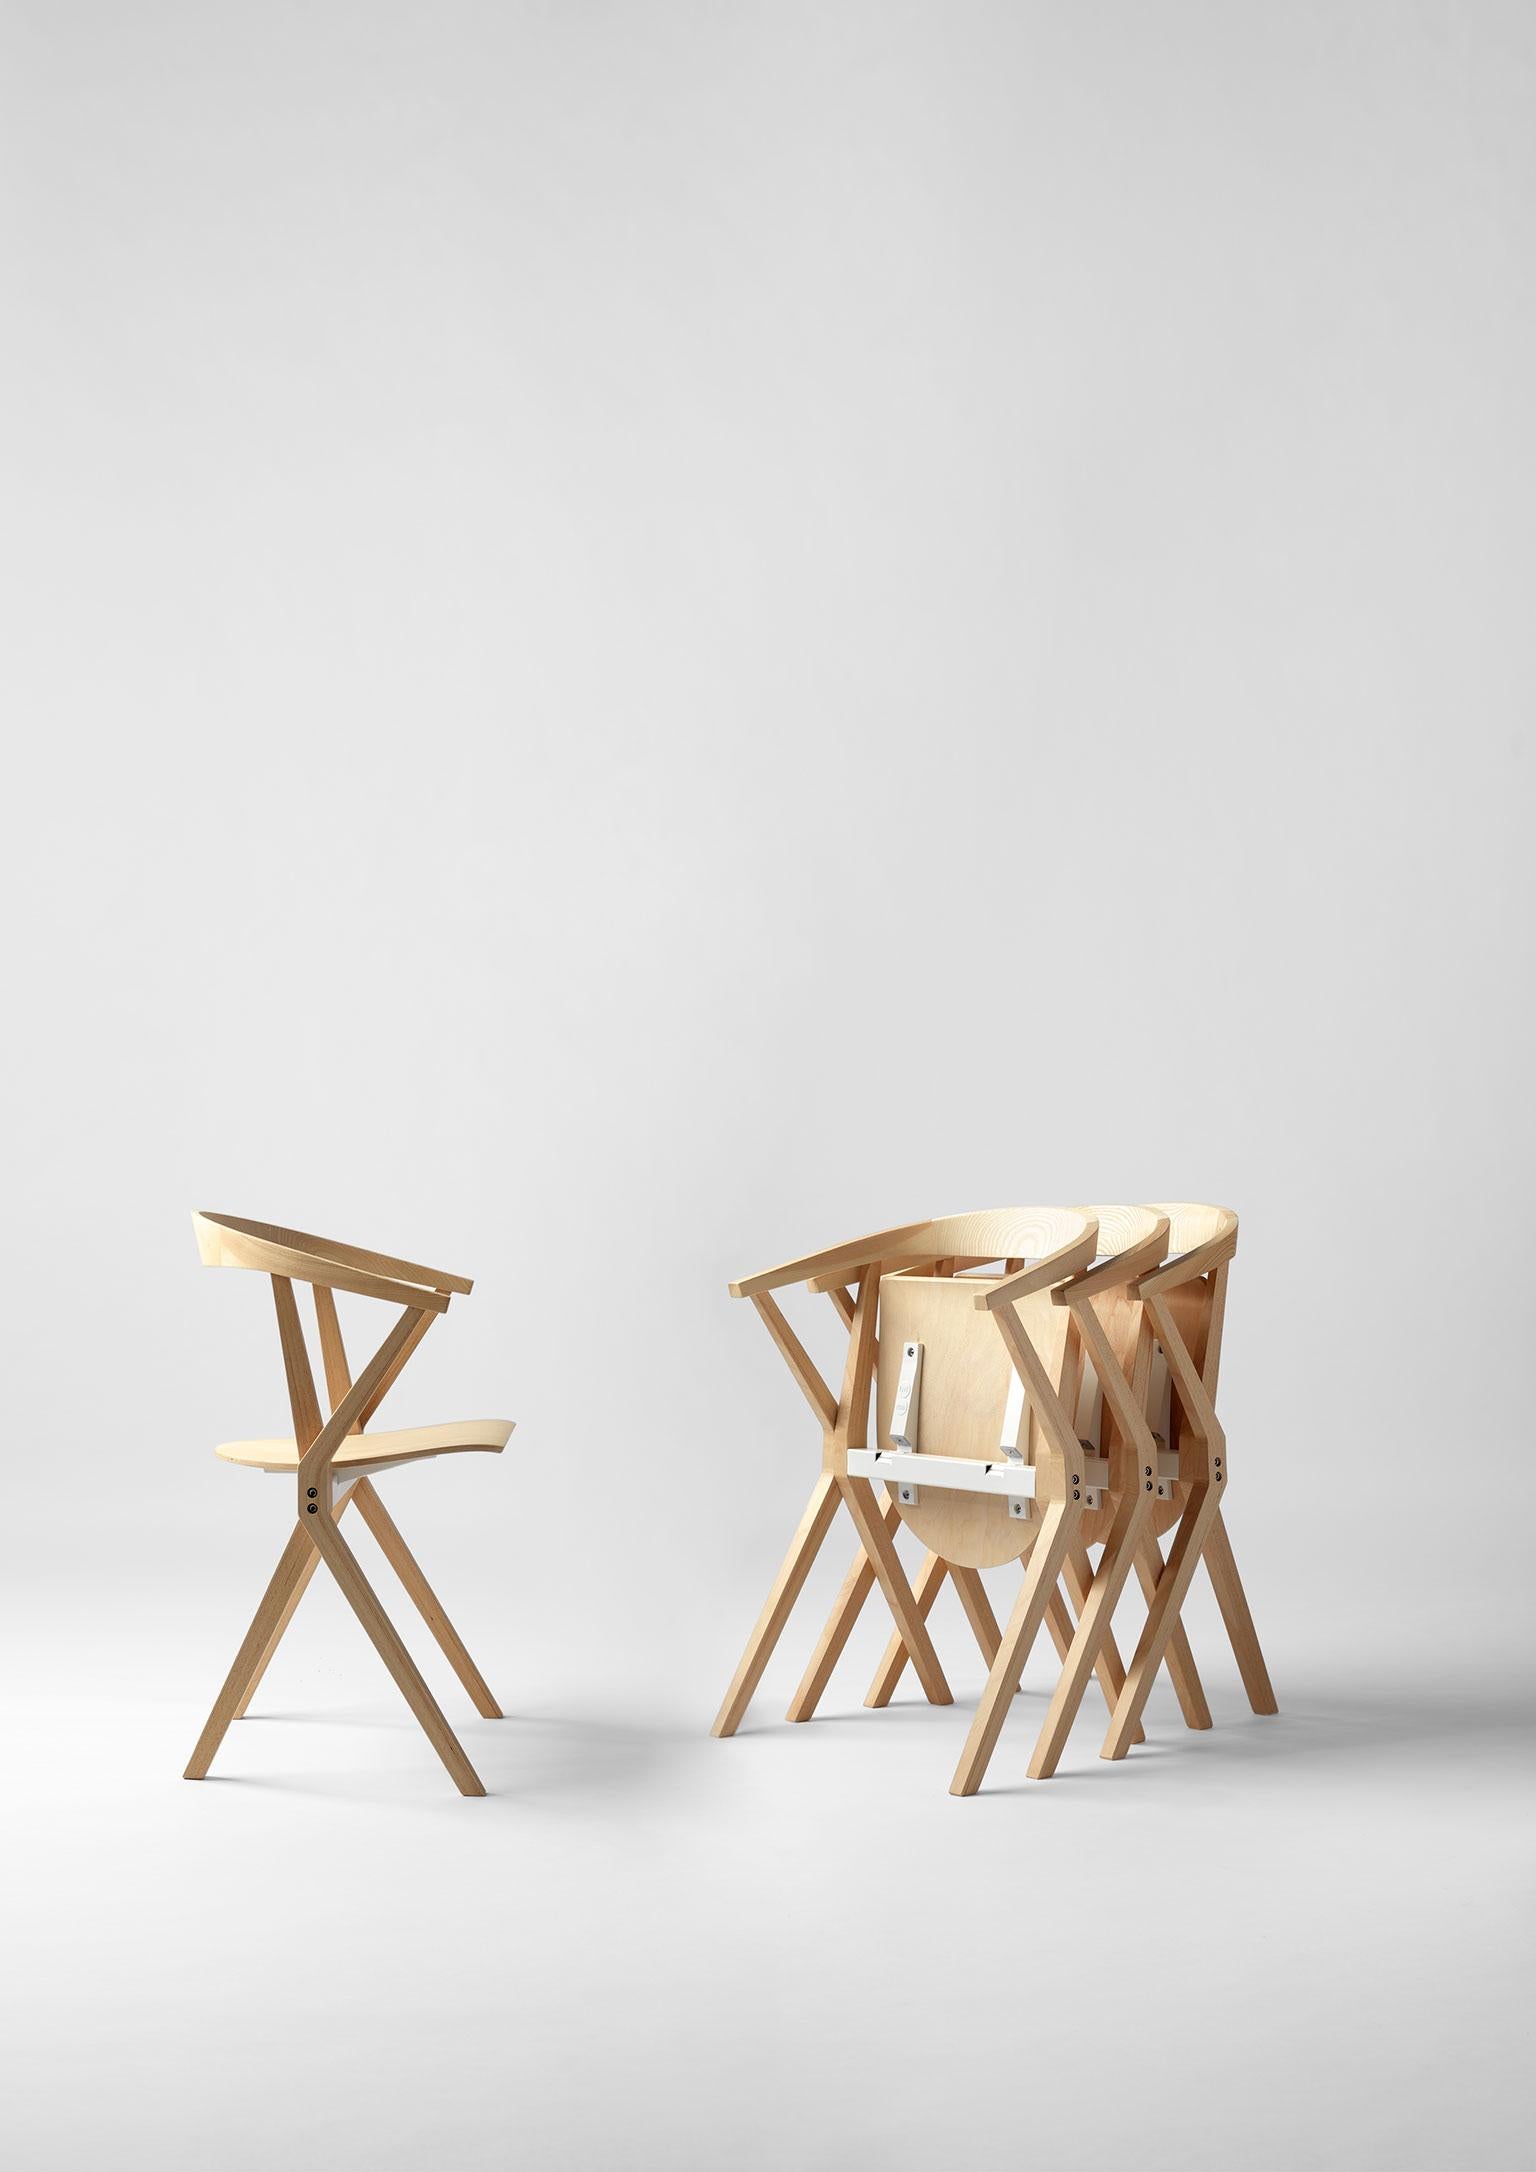 Stuhl B, entworfen von Konstantin Grcic für BD Barcelona. Konstantin Grcic ist ein deutscher Industriedesigner, der für seine Entwürfe für Massenprodukte wie Möbel und Haushaltsgeräte bekannt ist. Seine funktionalen Entwürfe zeichnen sich durch